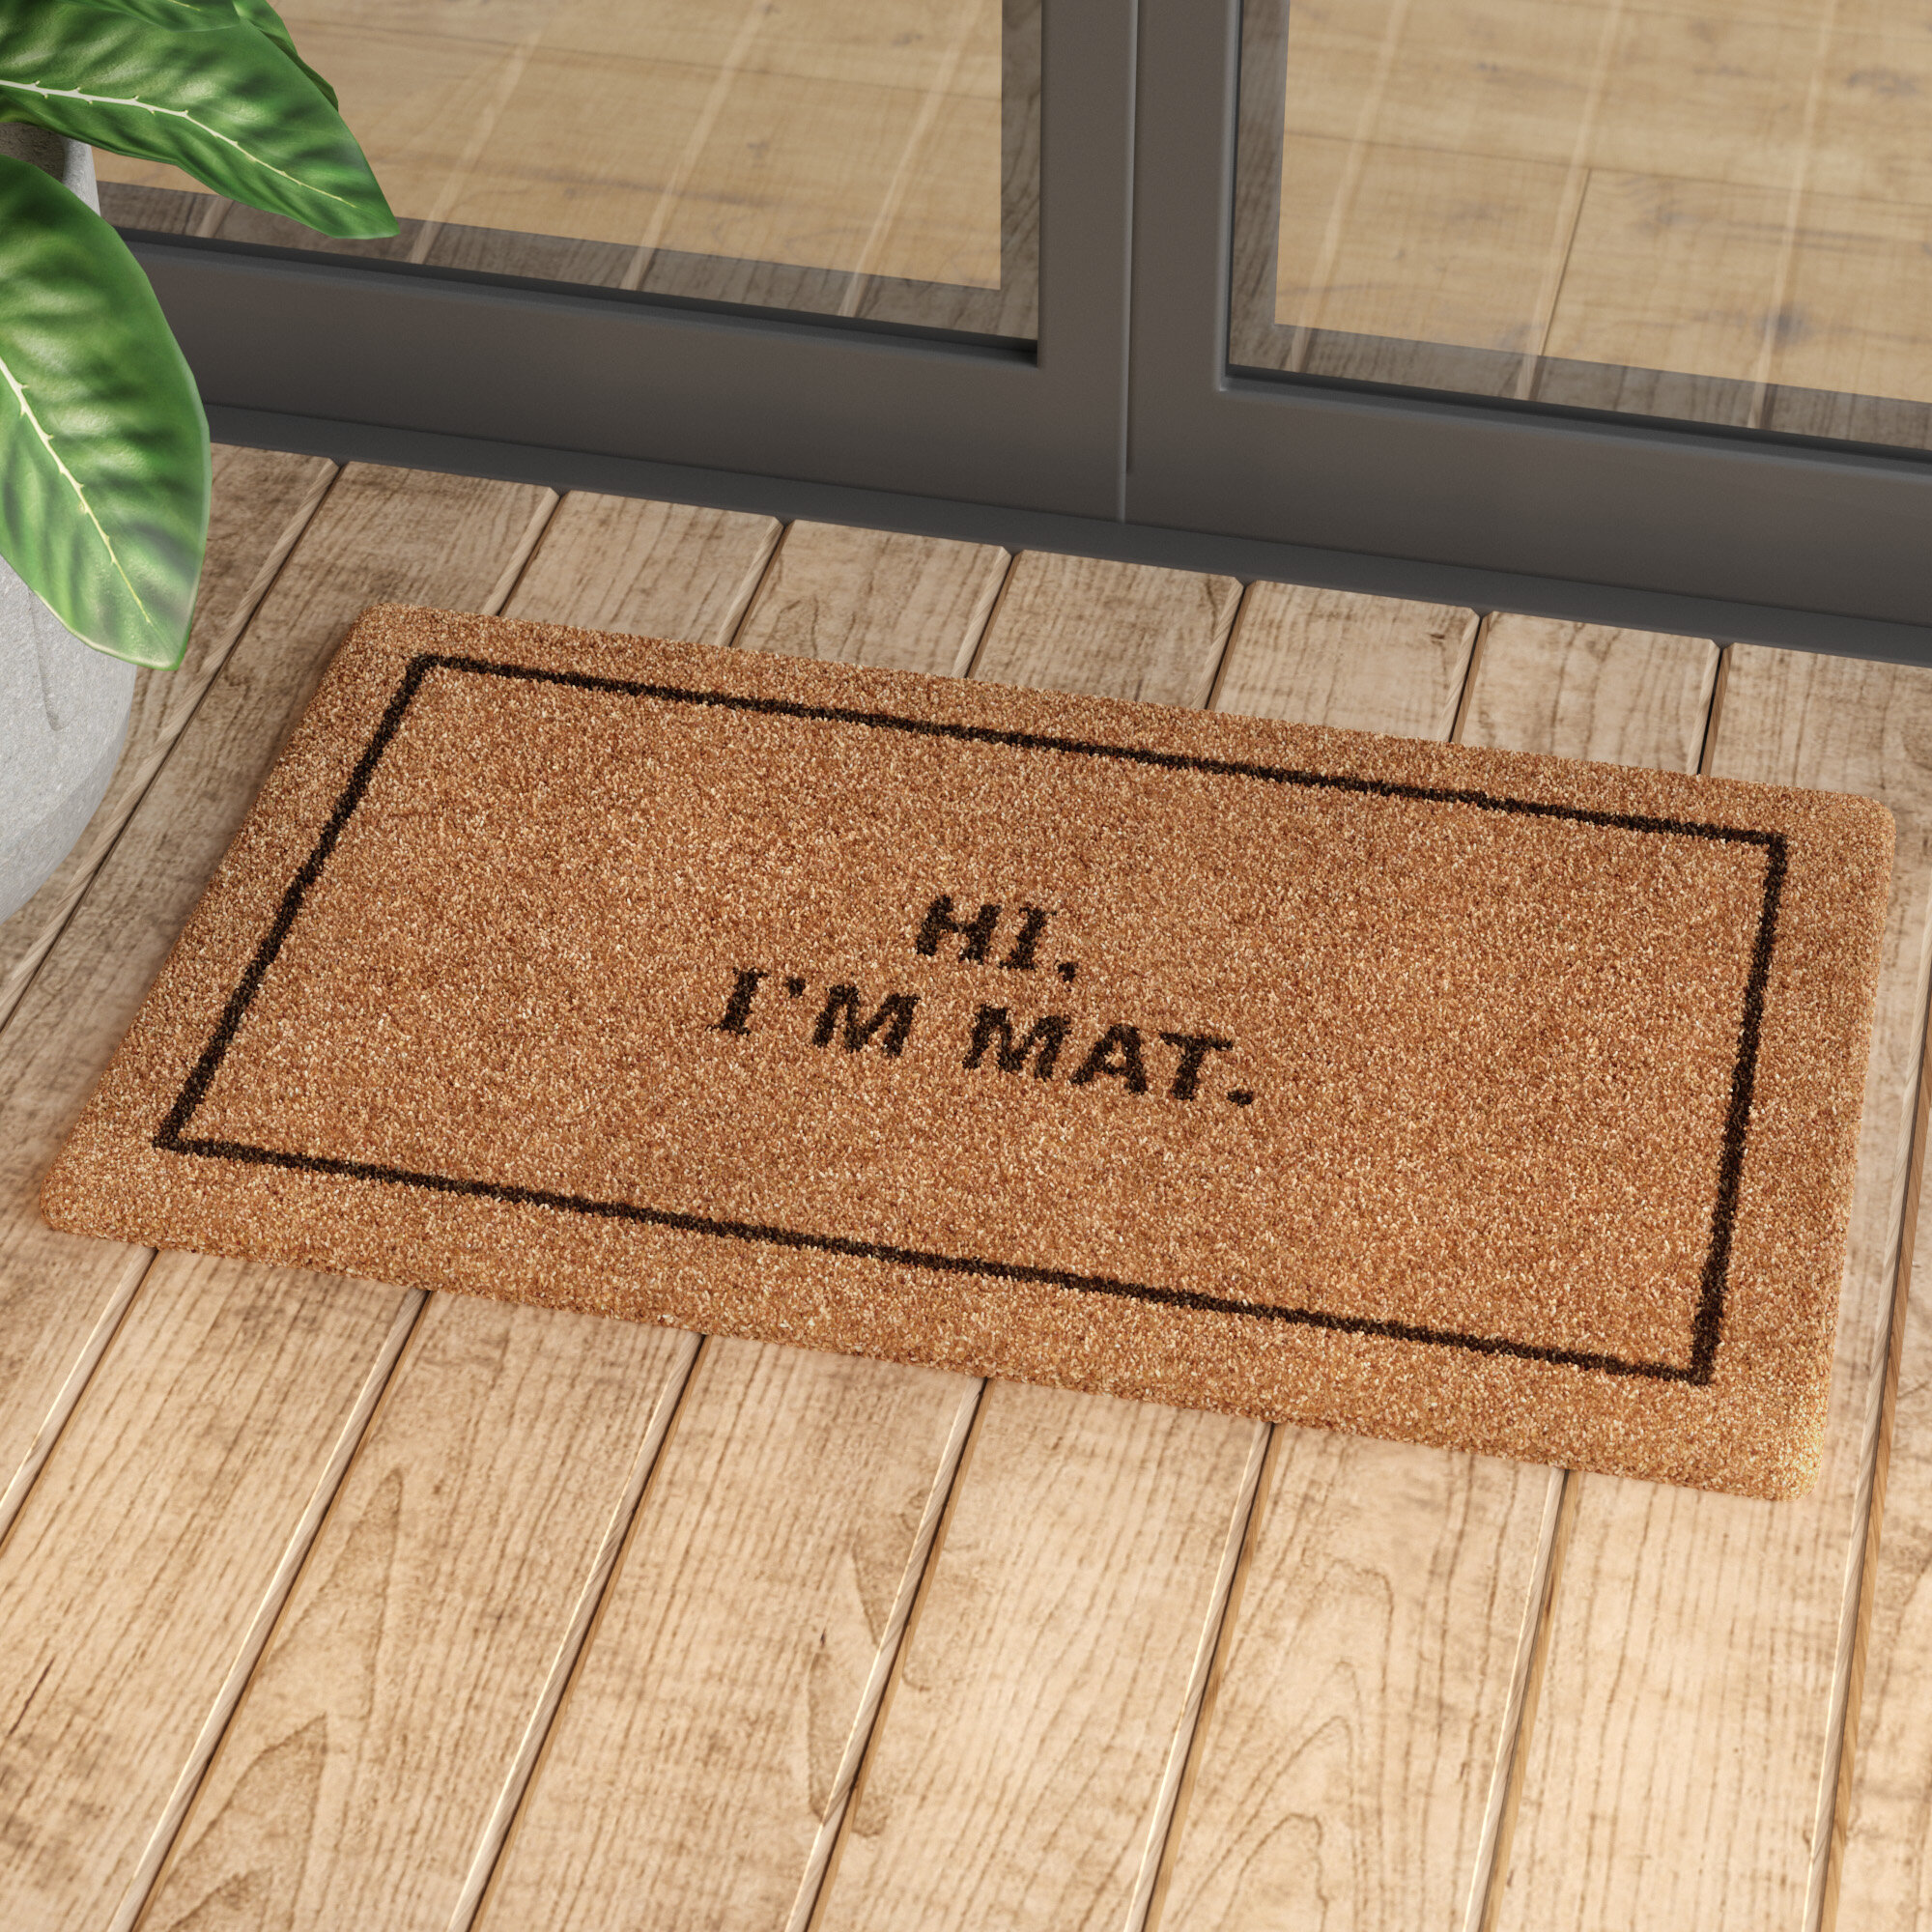 Image result for doormat